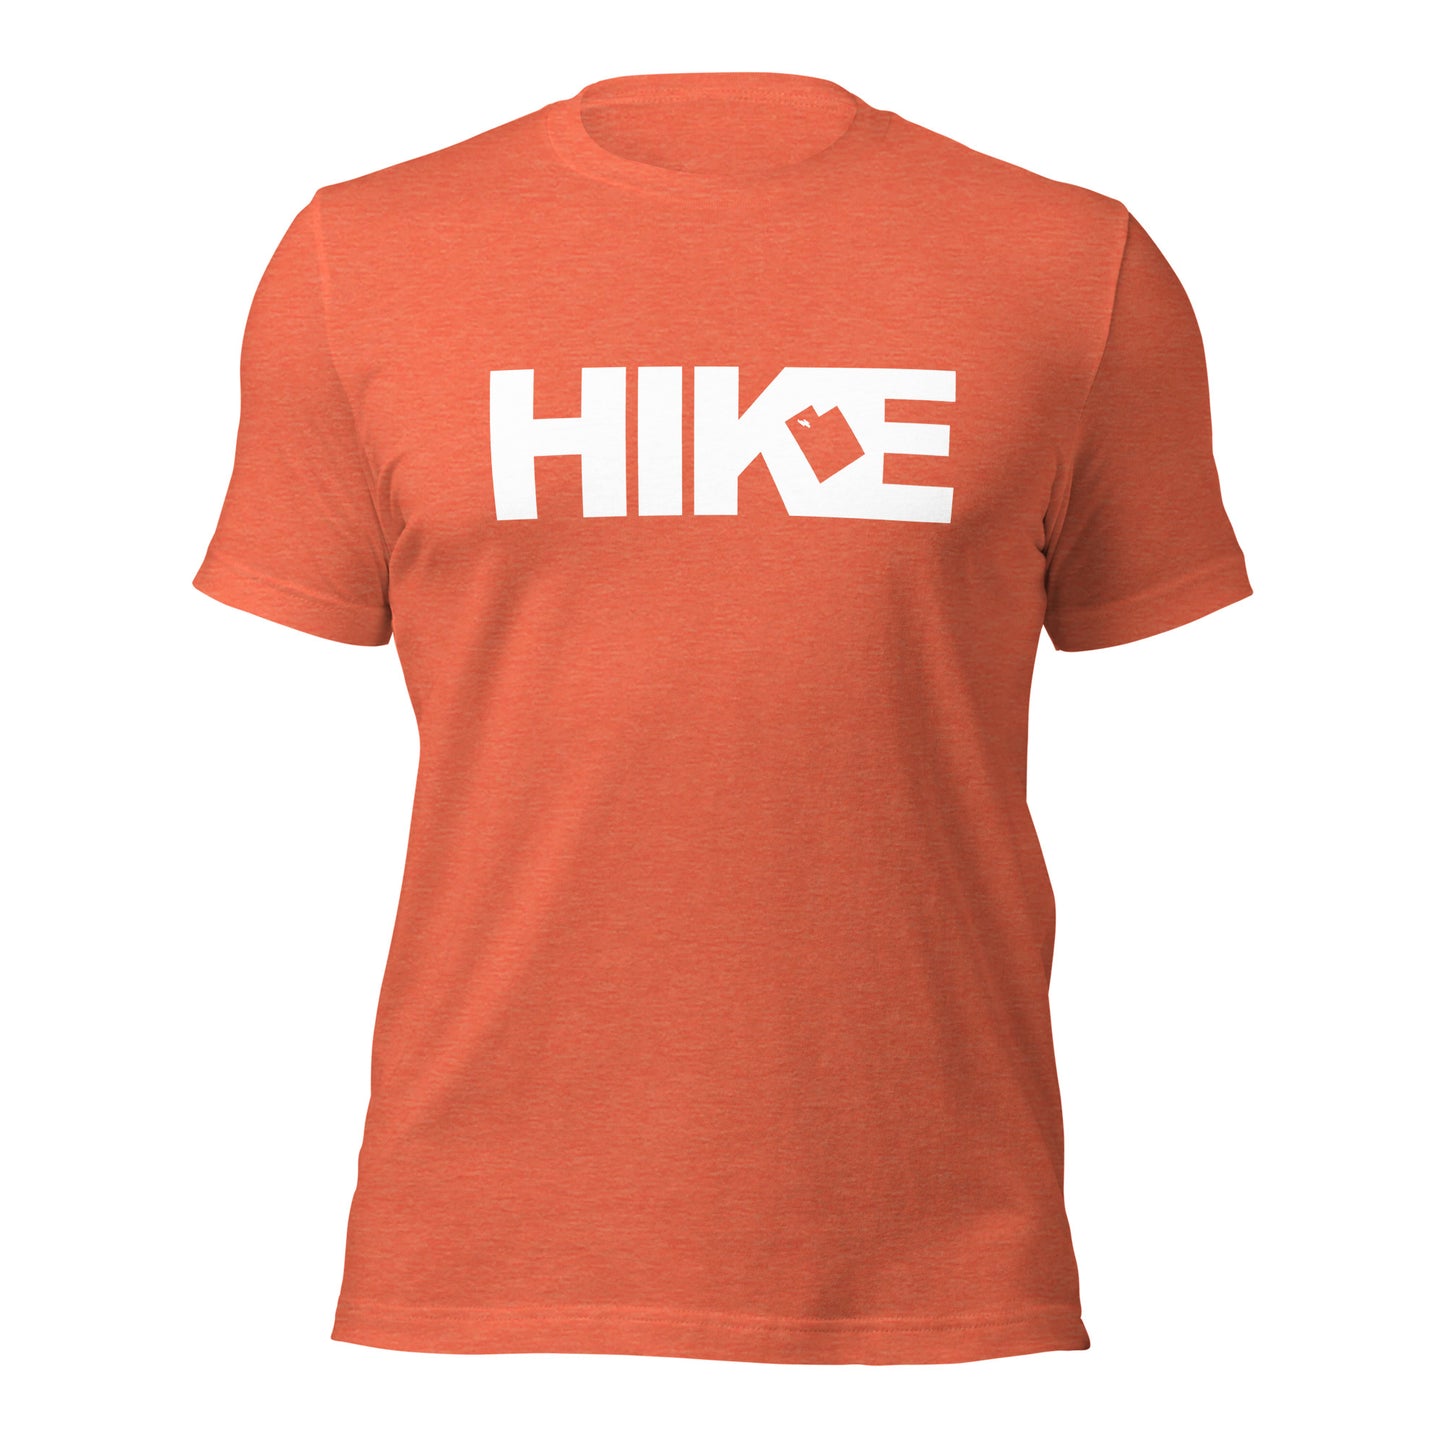 Hike UT45 T-Shirt